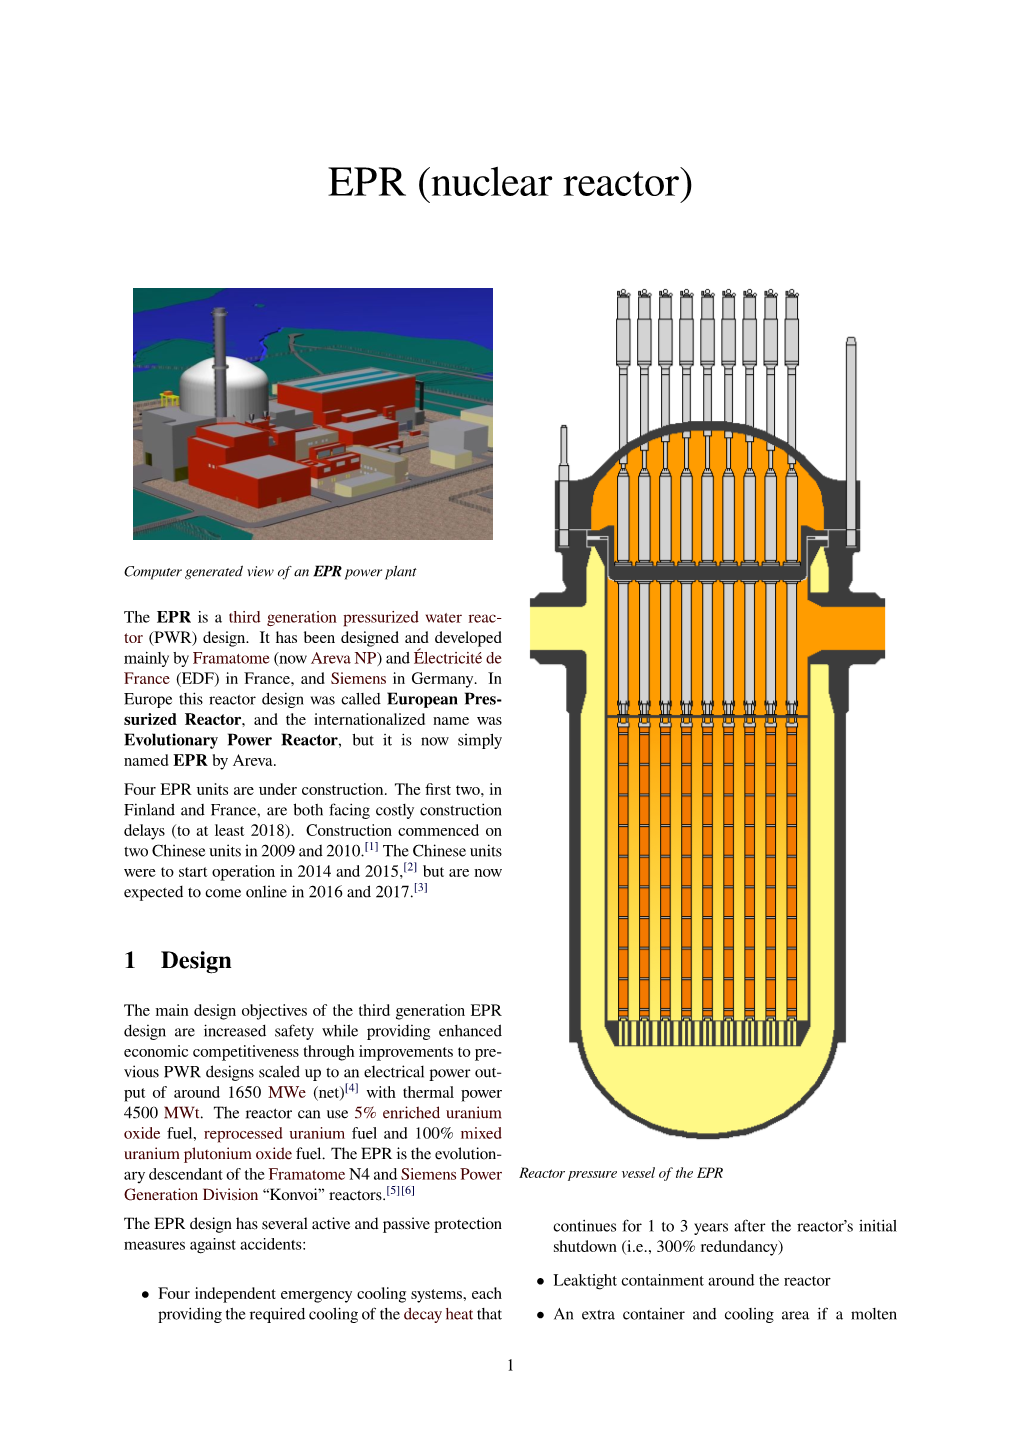 EPR (Nuclear Reactor)